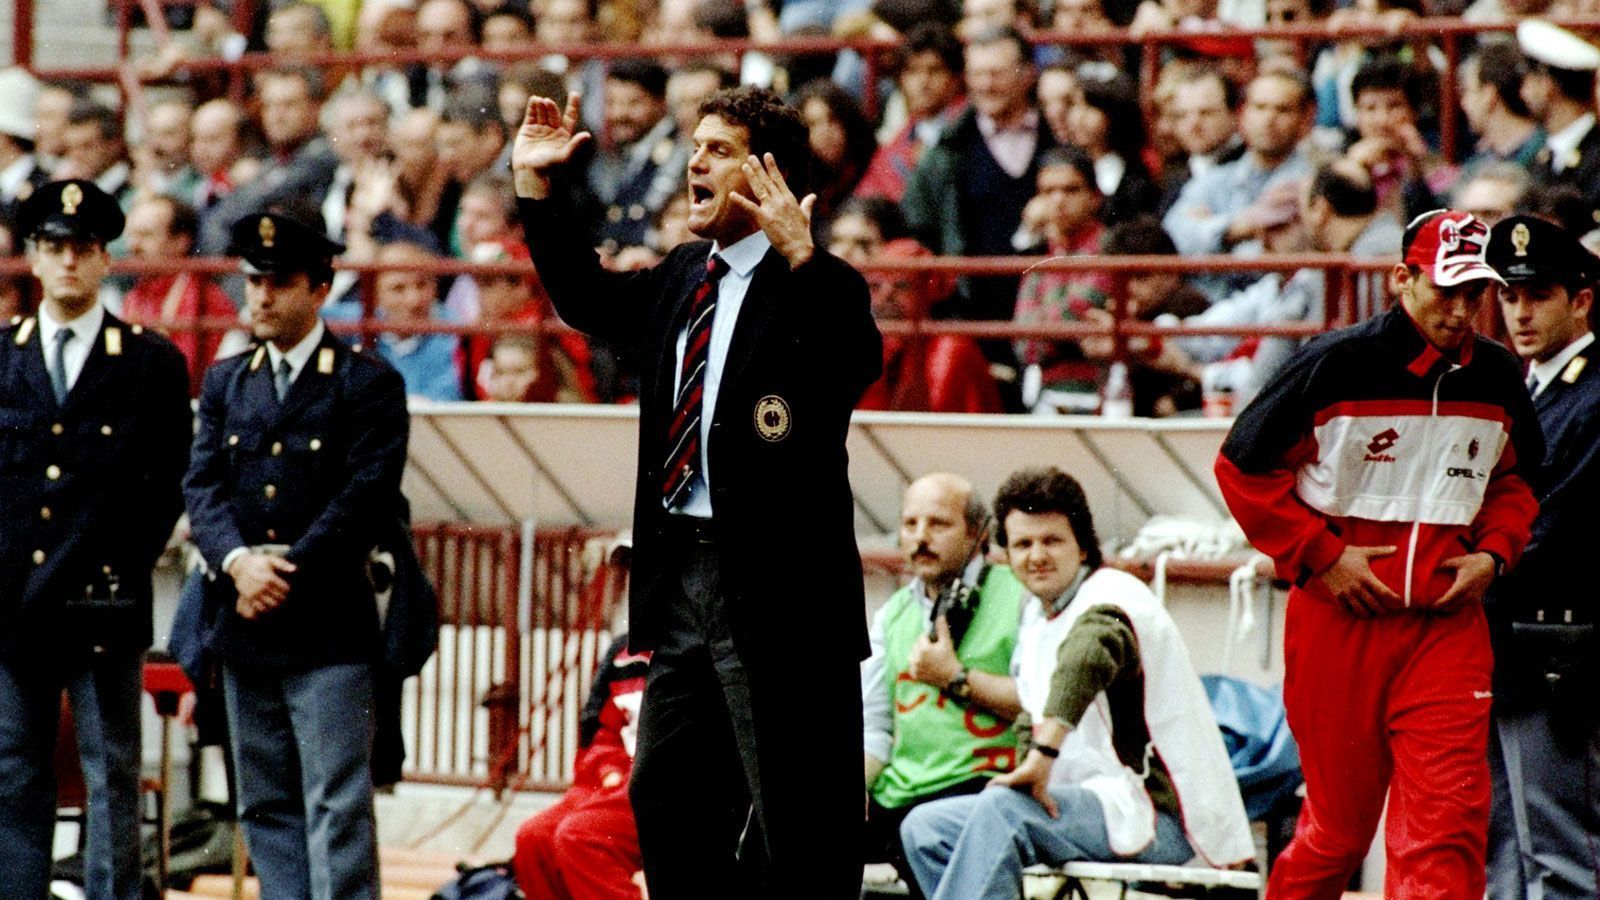 
                <strong>Fabio Capello (AC Mailand 1991-96, 1997-98)</strong><br>
                Fabio Capellos erste Amtszeit beim AC Mailand (1991-96) war von Erfolgen gekrönt. Der Italiener gewann vier Meistertitel und triumphierte 1994 sogar in der Champions League. Seine Rückkehr 1997 verlief weitaus weniger erfreulich. Ohne Titel musste Capello nach nur einem Jahr im Mai 1998 wieder gehen. 
              